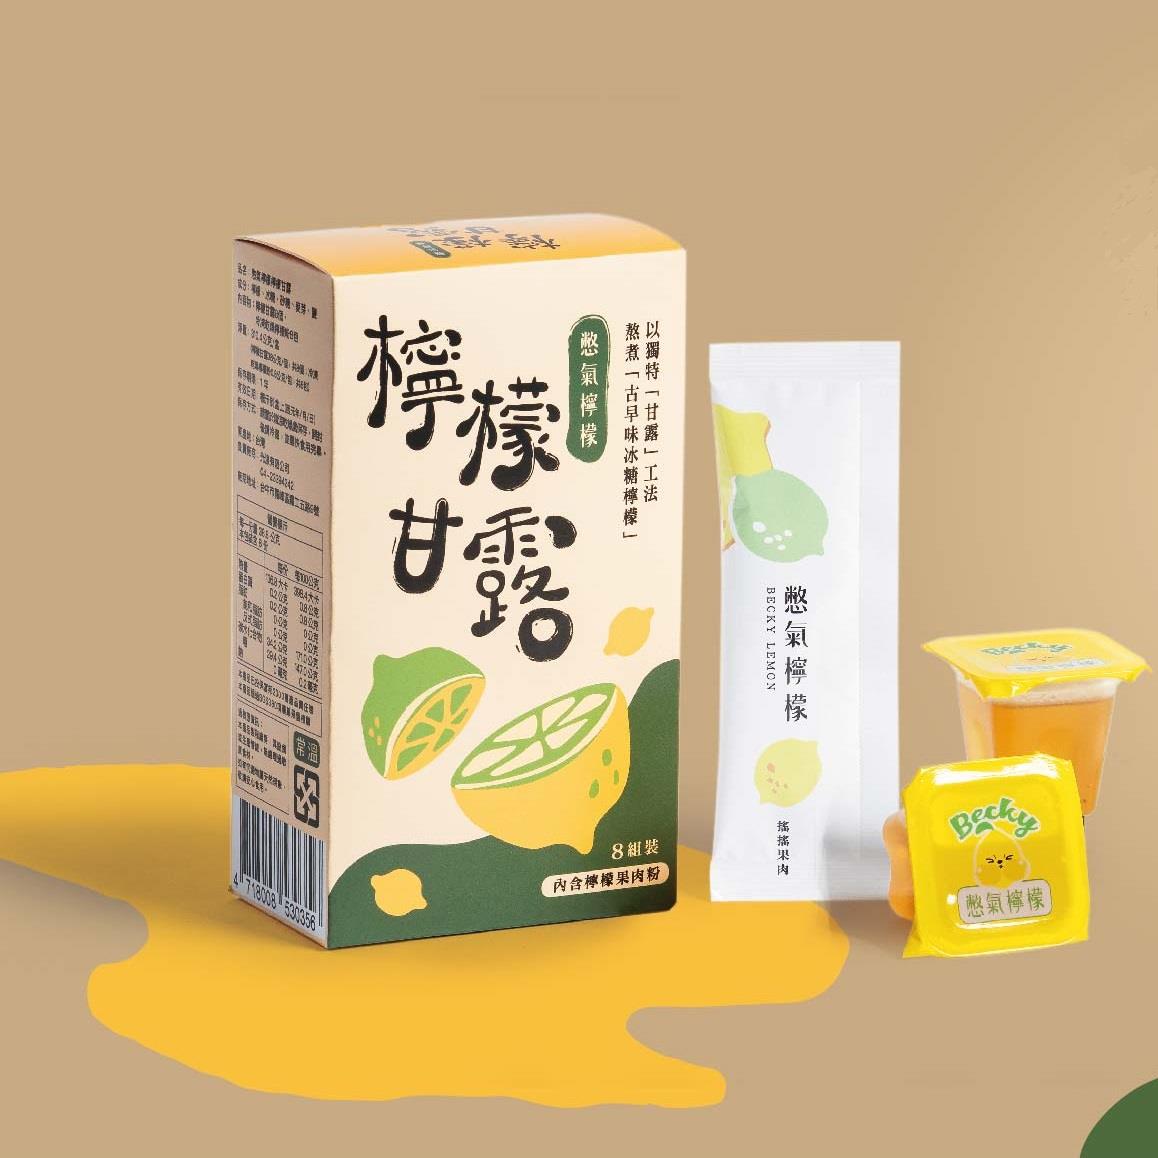 【憋氣檸檬】檸檬甘露(310.4g/盒(檸檬甘露38g*8個+乾燥檸檬粉0.8g*8包))